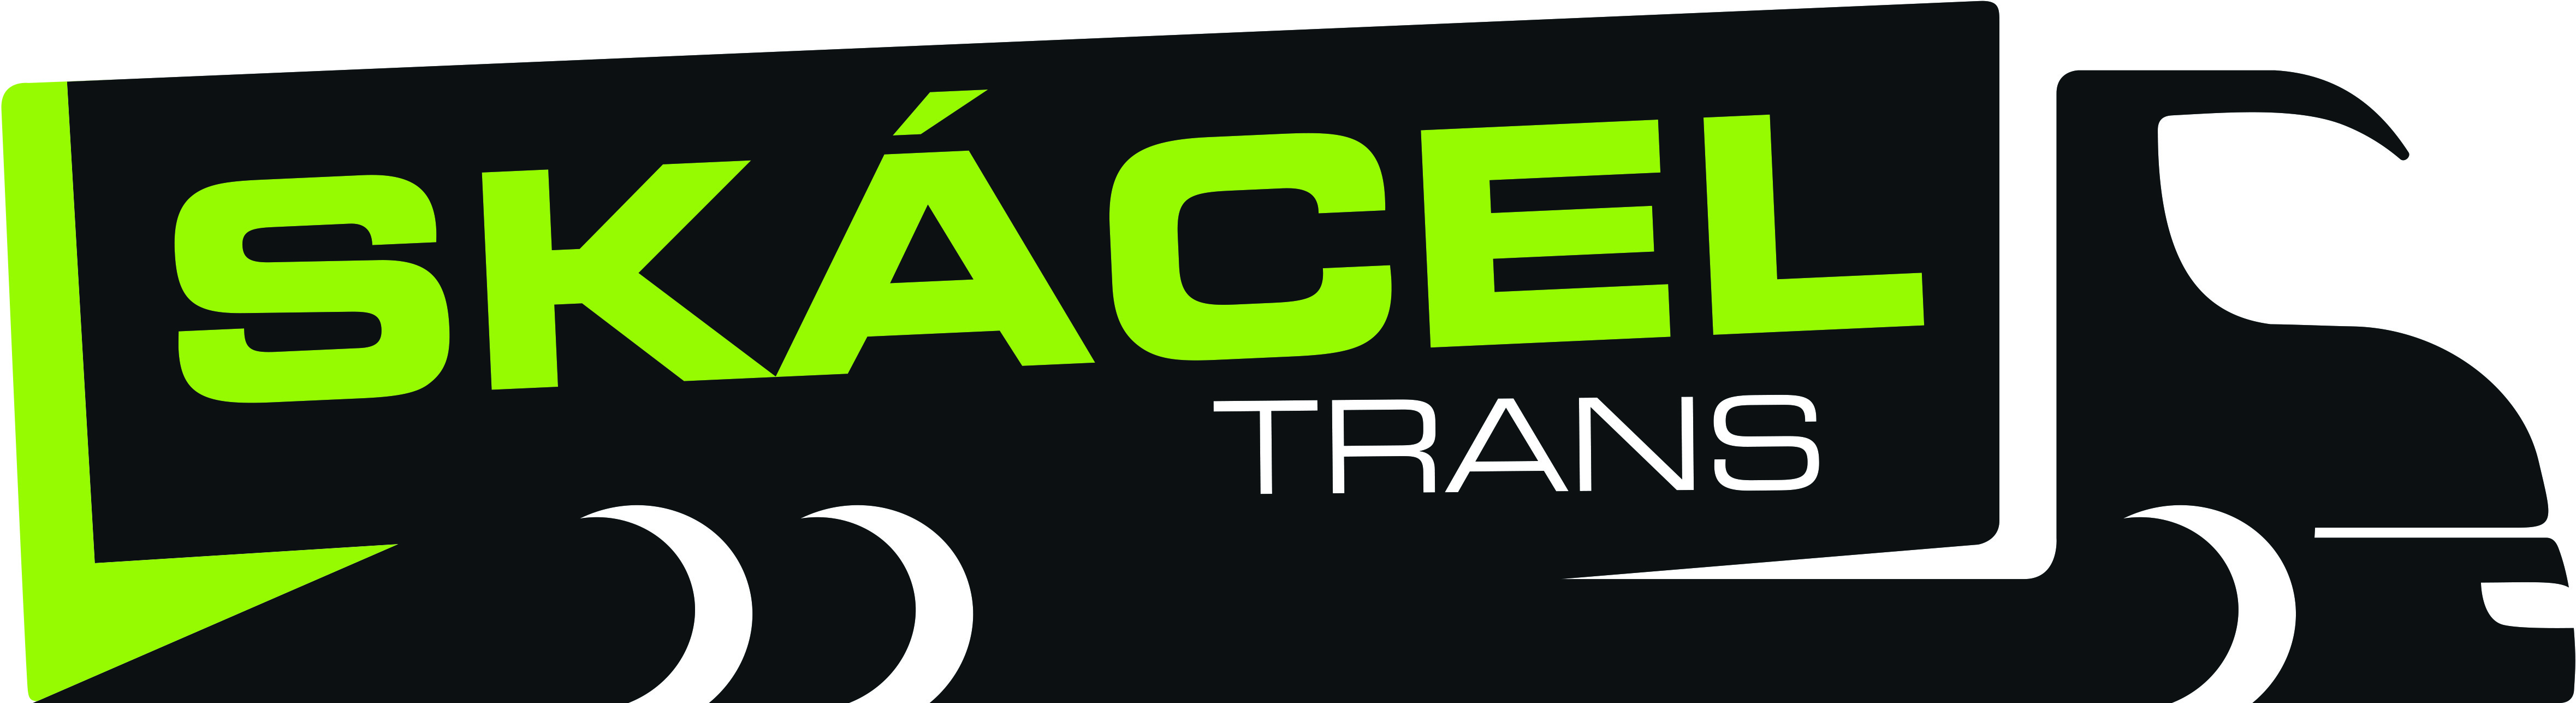 Skácel trans_logo